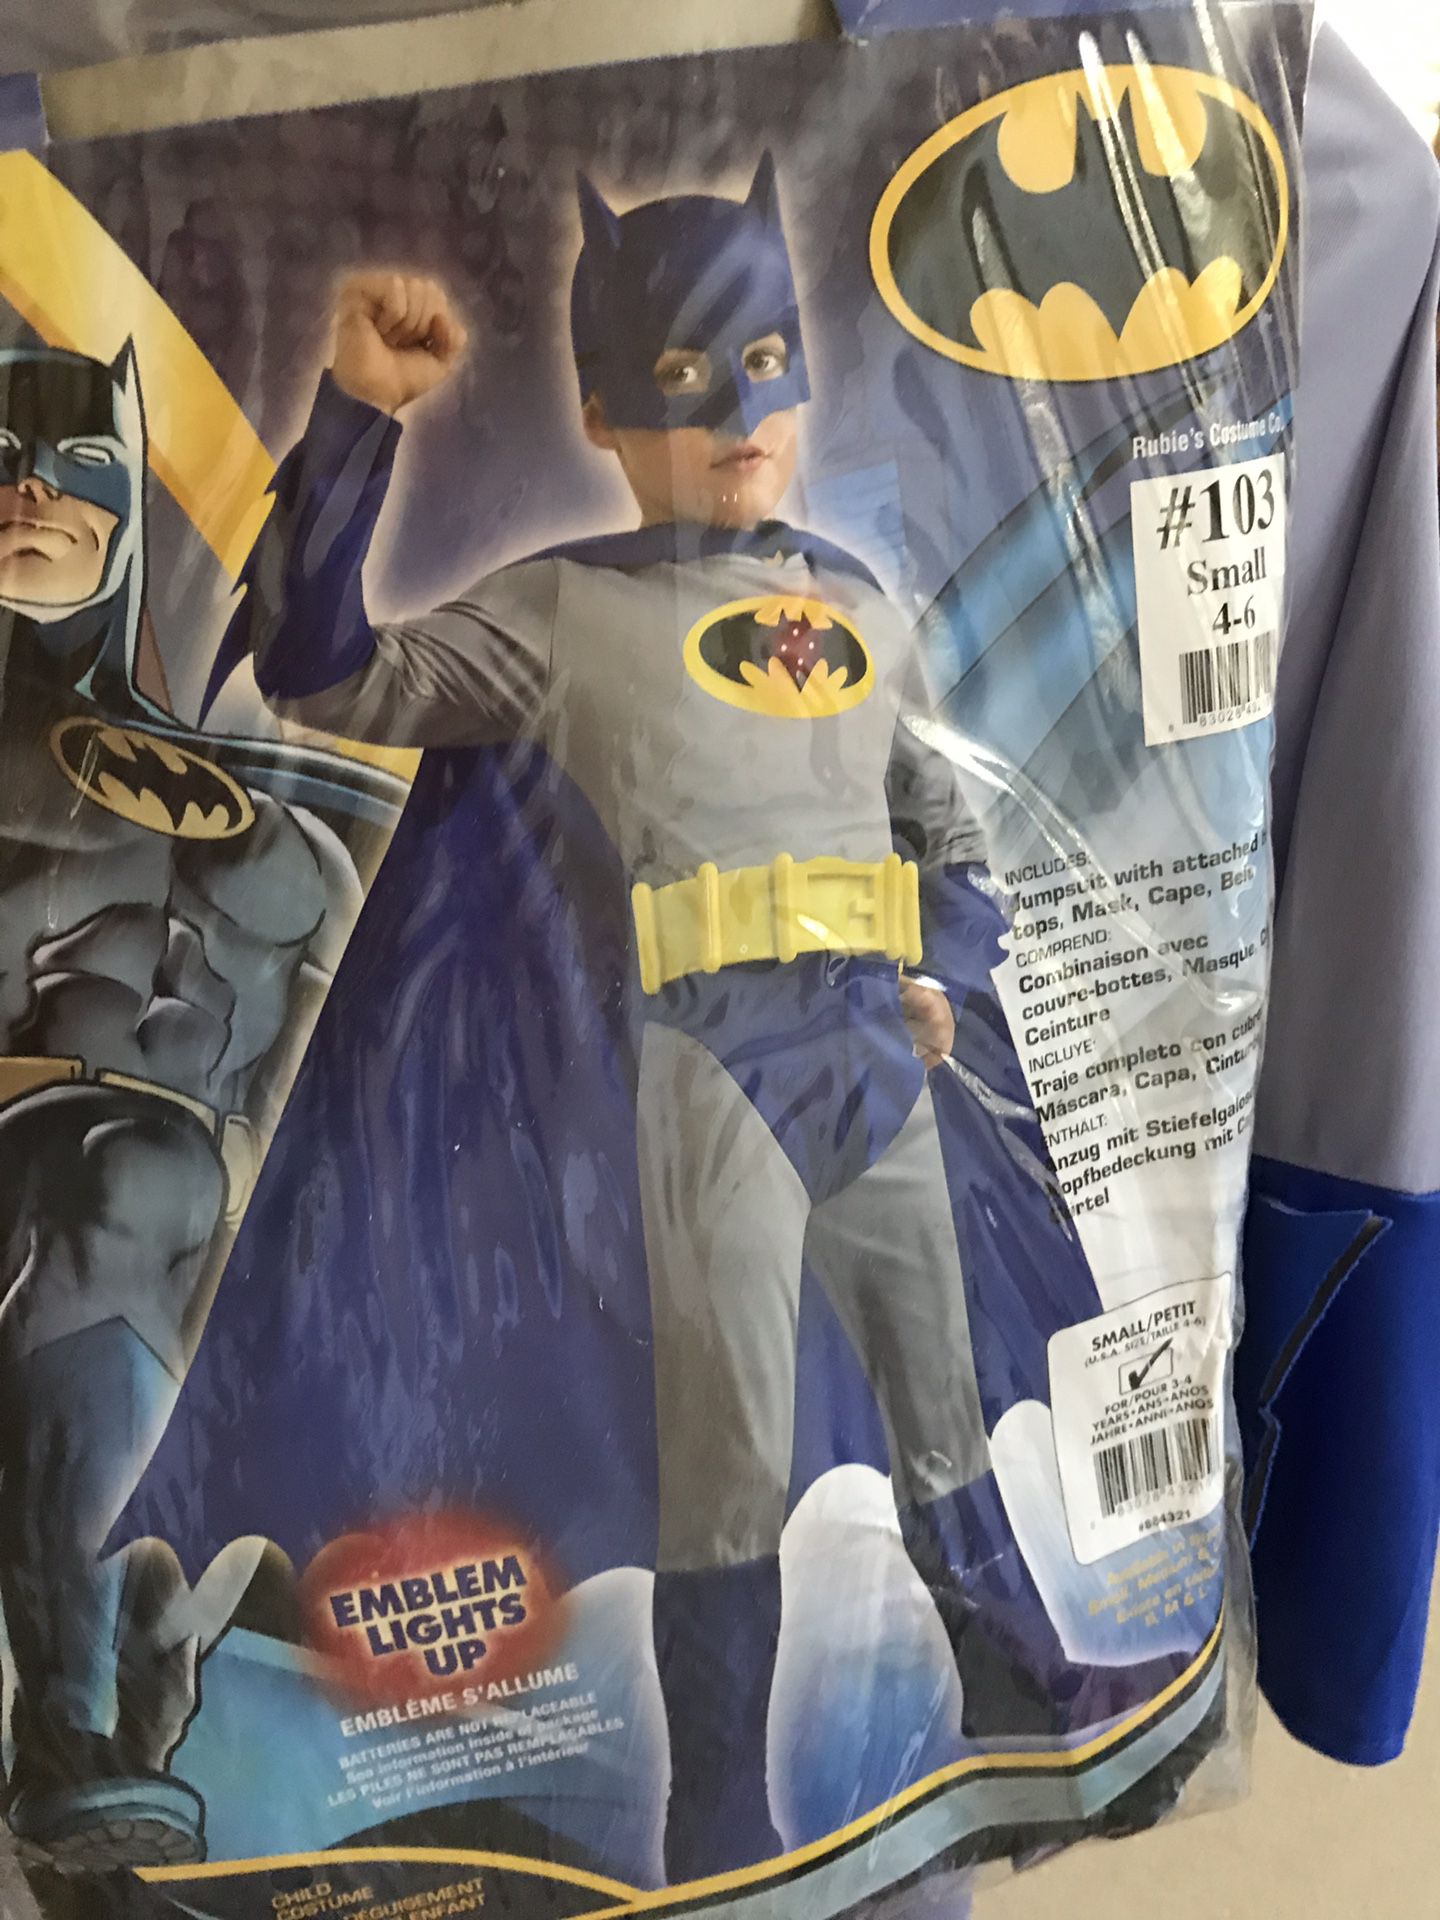 Batman costume -small 4-6